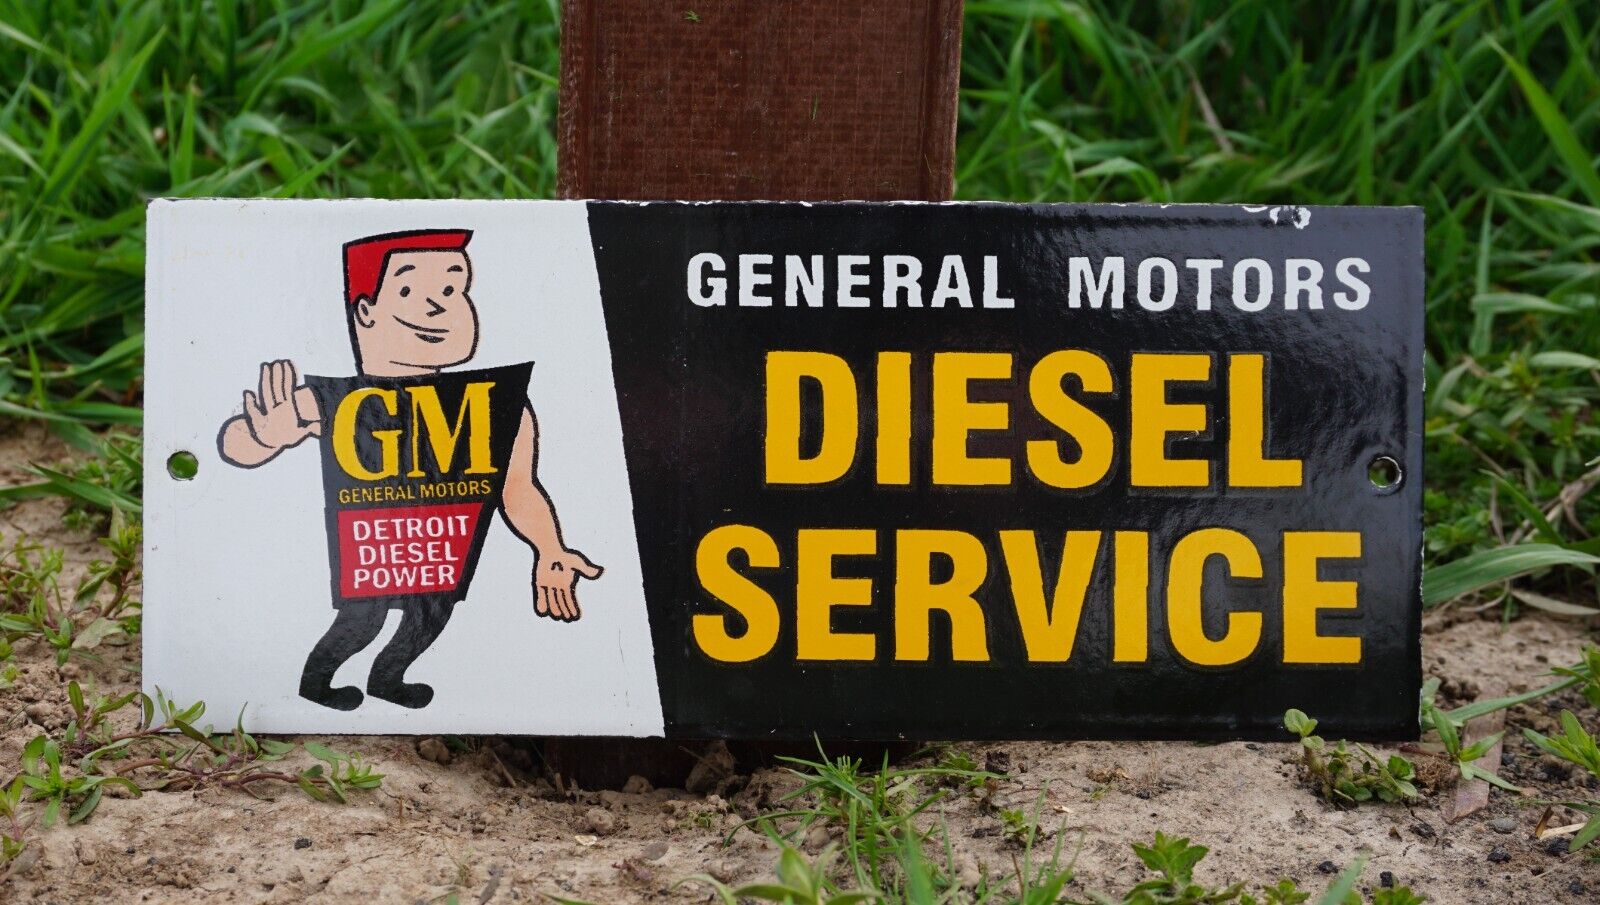 VINTAGE GM GENERAL MOTORS PORCELAIN SIGN RARE GAS OIL SERVICE STATION PUMP AD